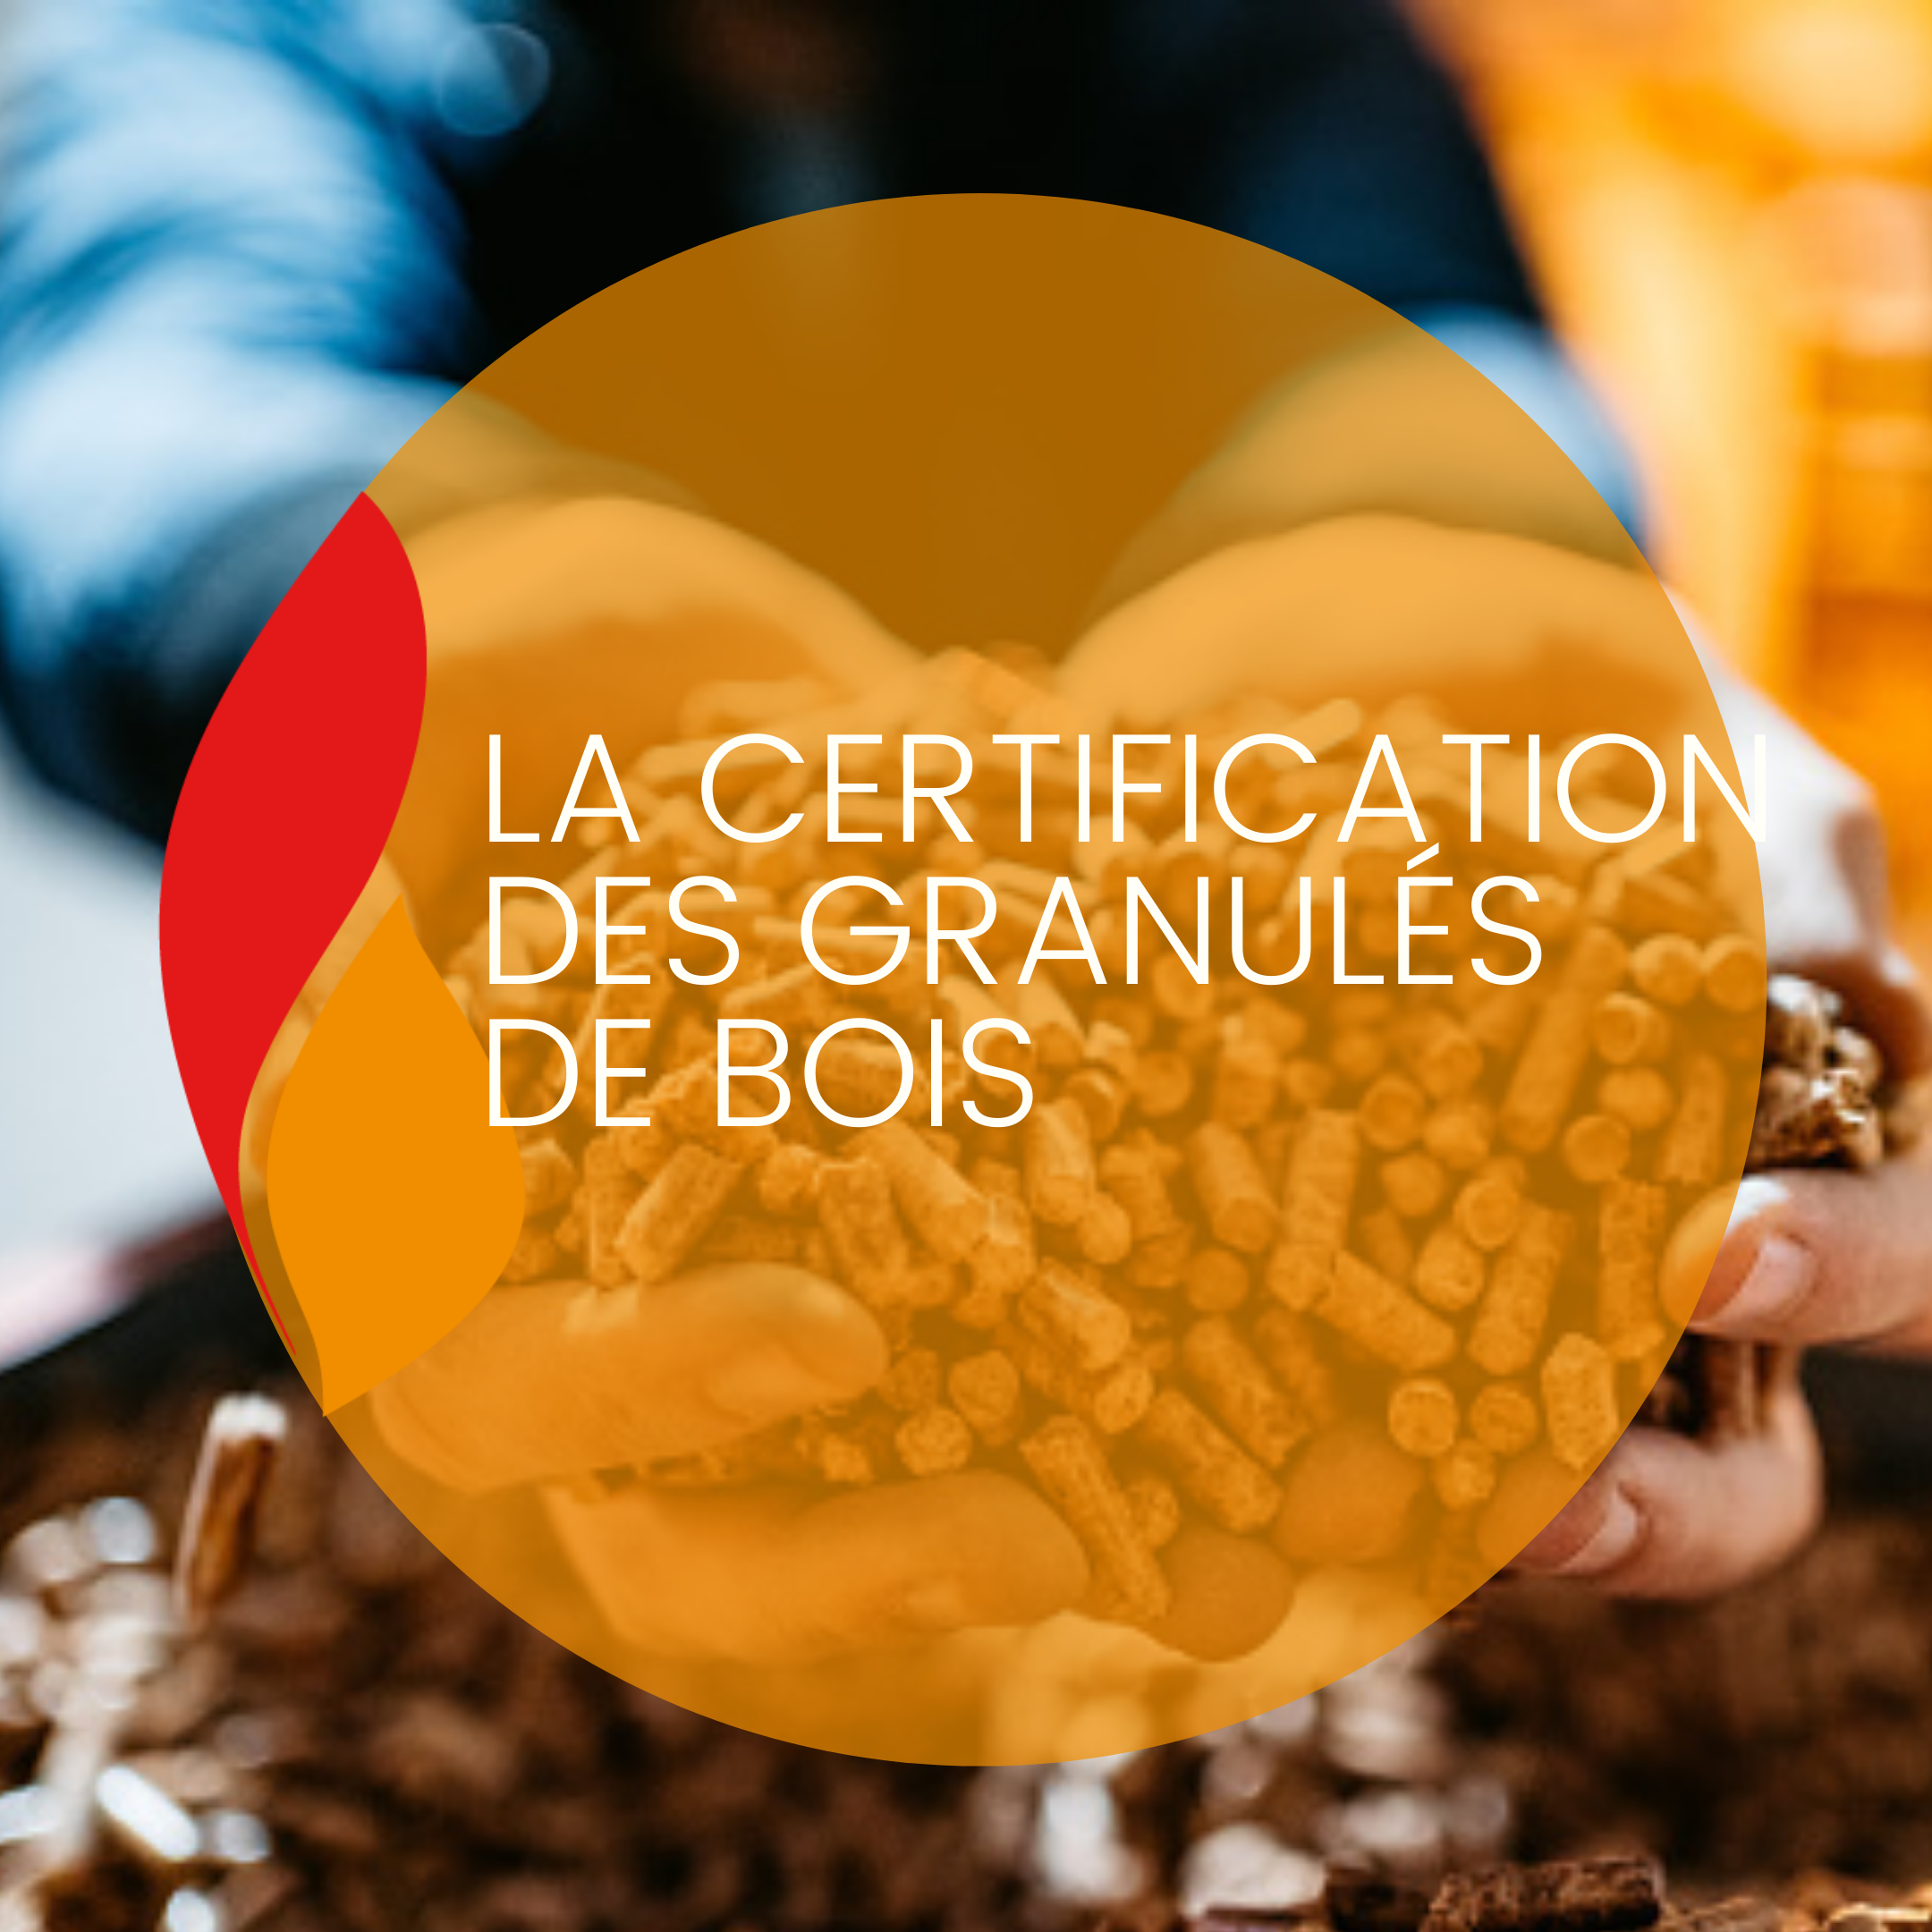 You are currently viewing La certification des granulés de bois